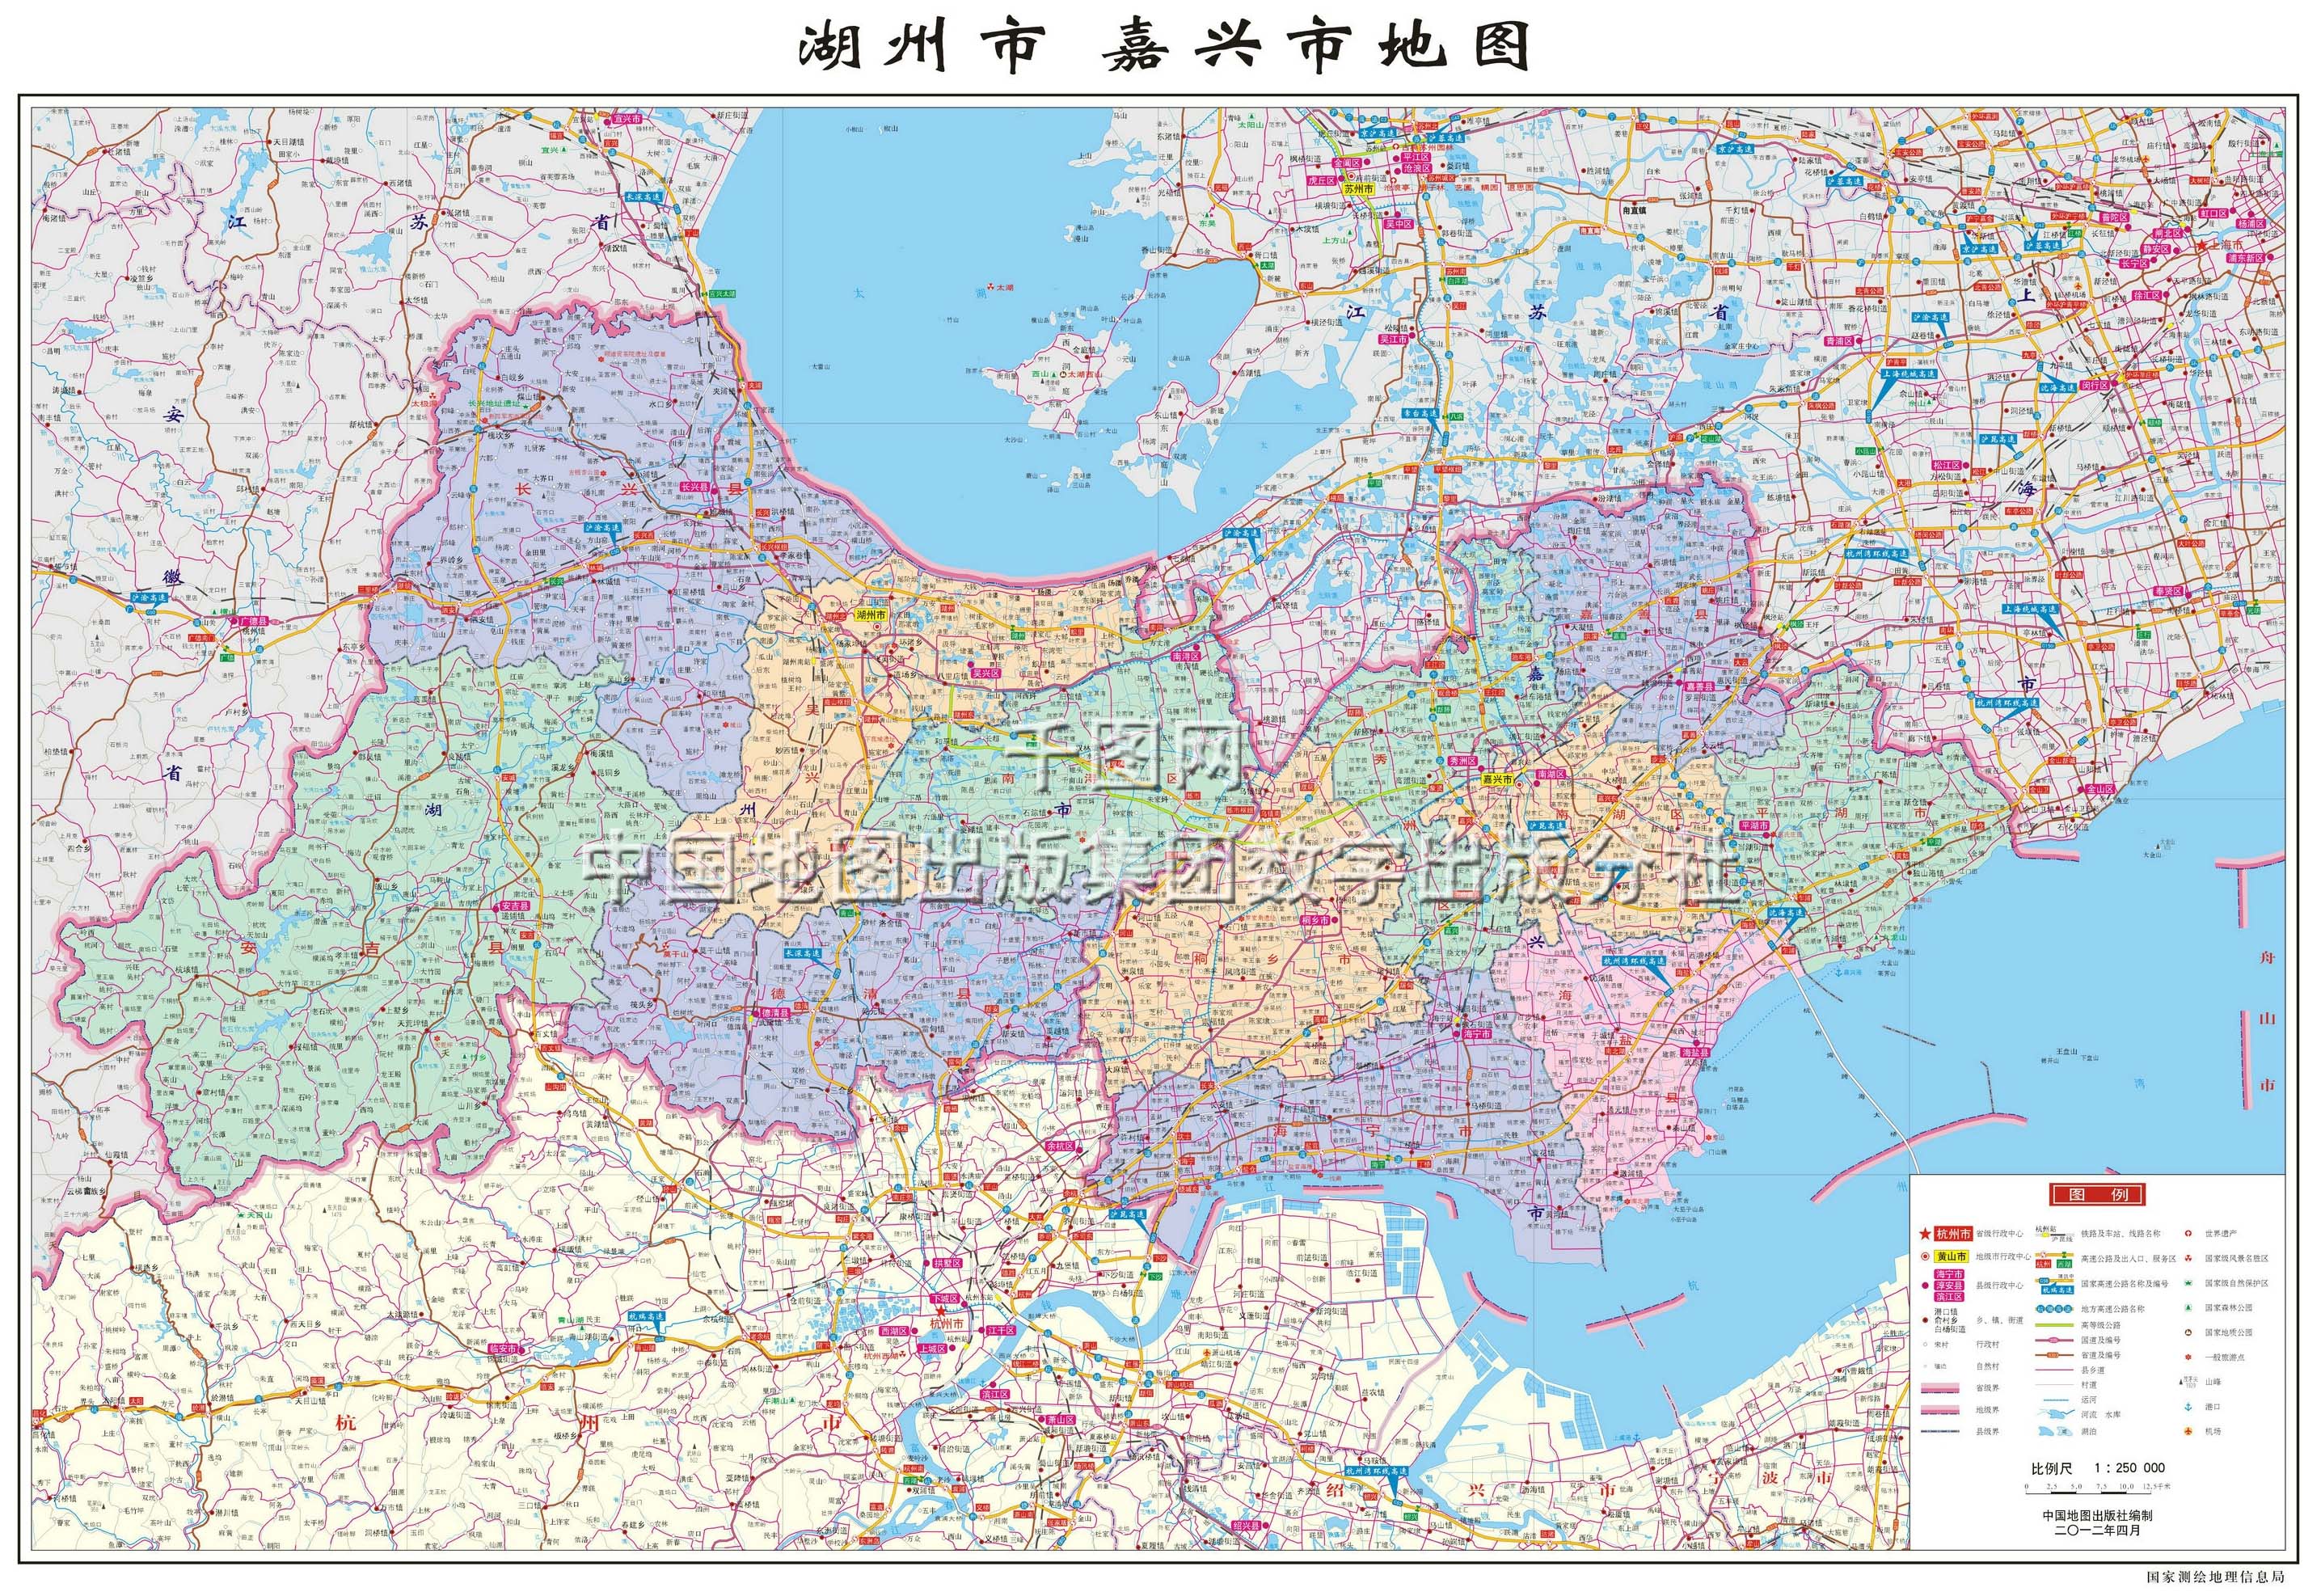 嘉兴 |  下一张 地图 :  嘉兴 市交通旅游 地图高清全图 